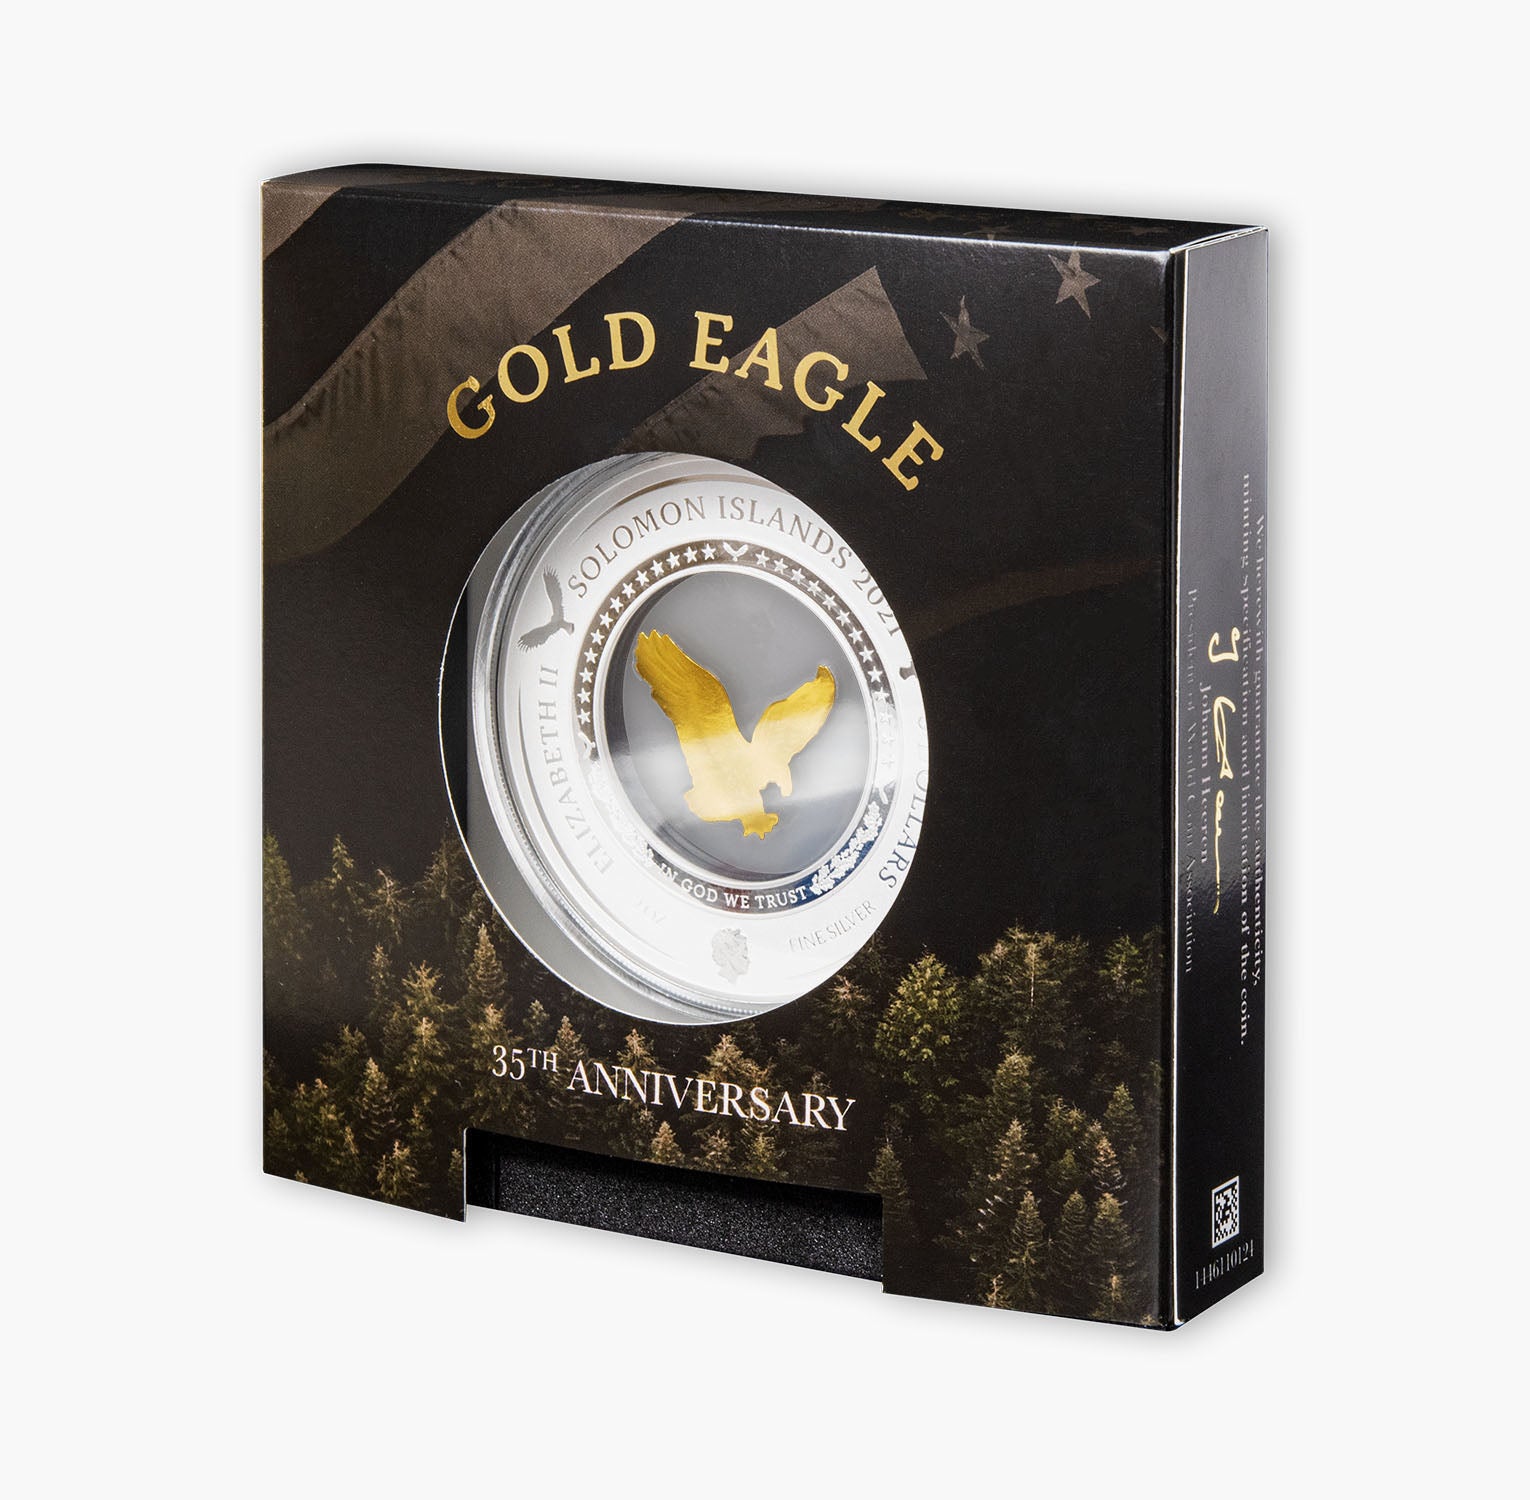 The Gold Eagle 2oz Silver Coin